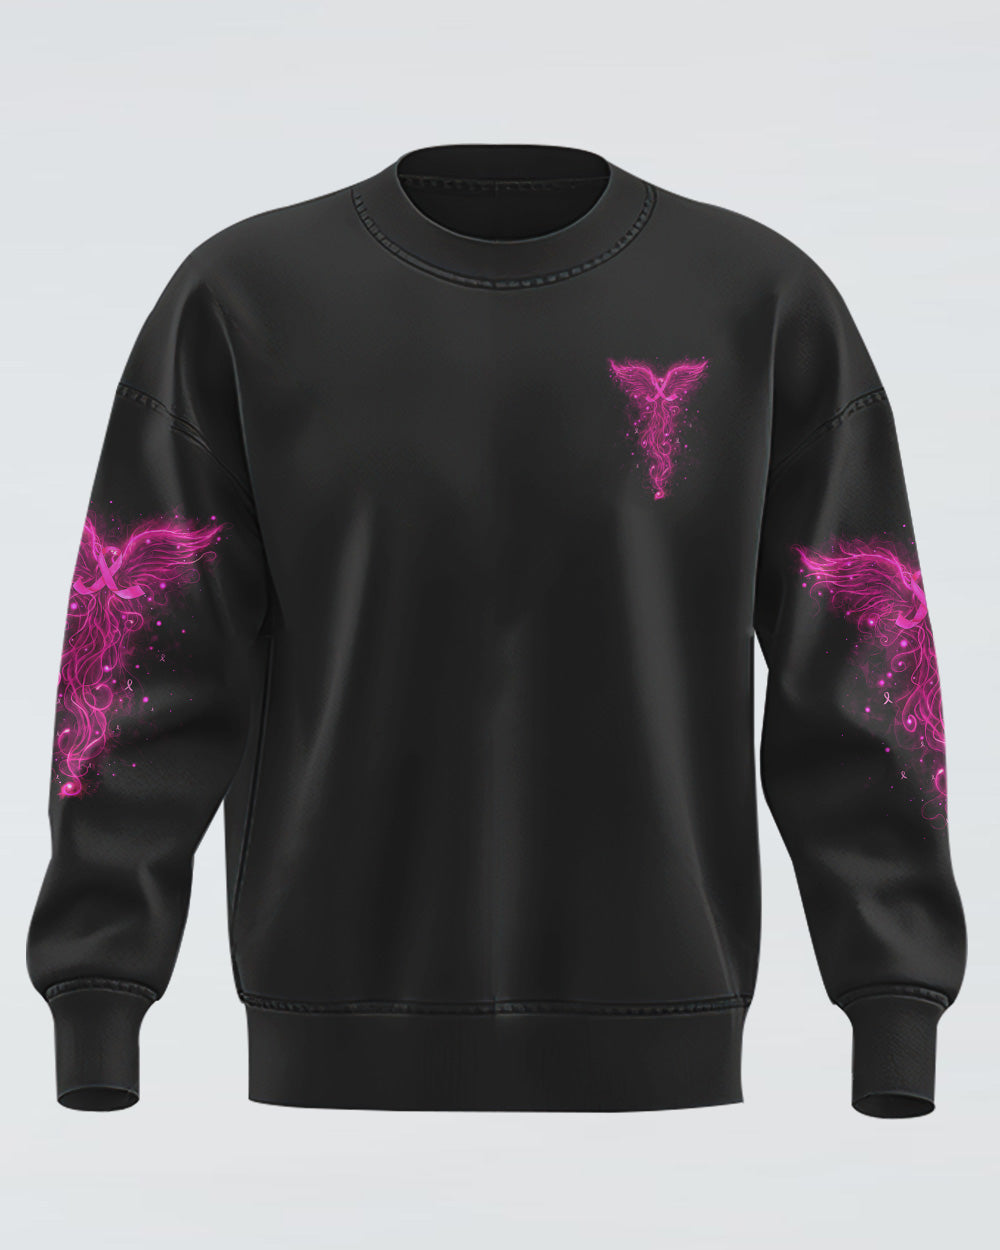 Never Give Up Phoenix Women's Breast Cancer Awareness Sweatshirt